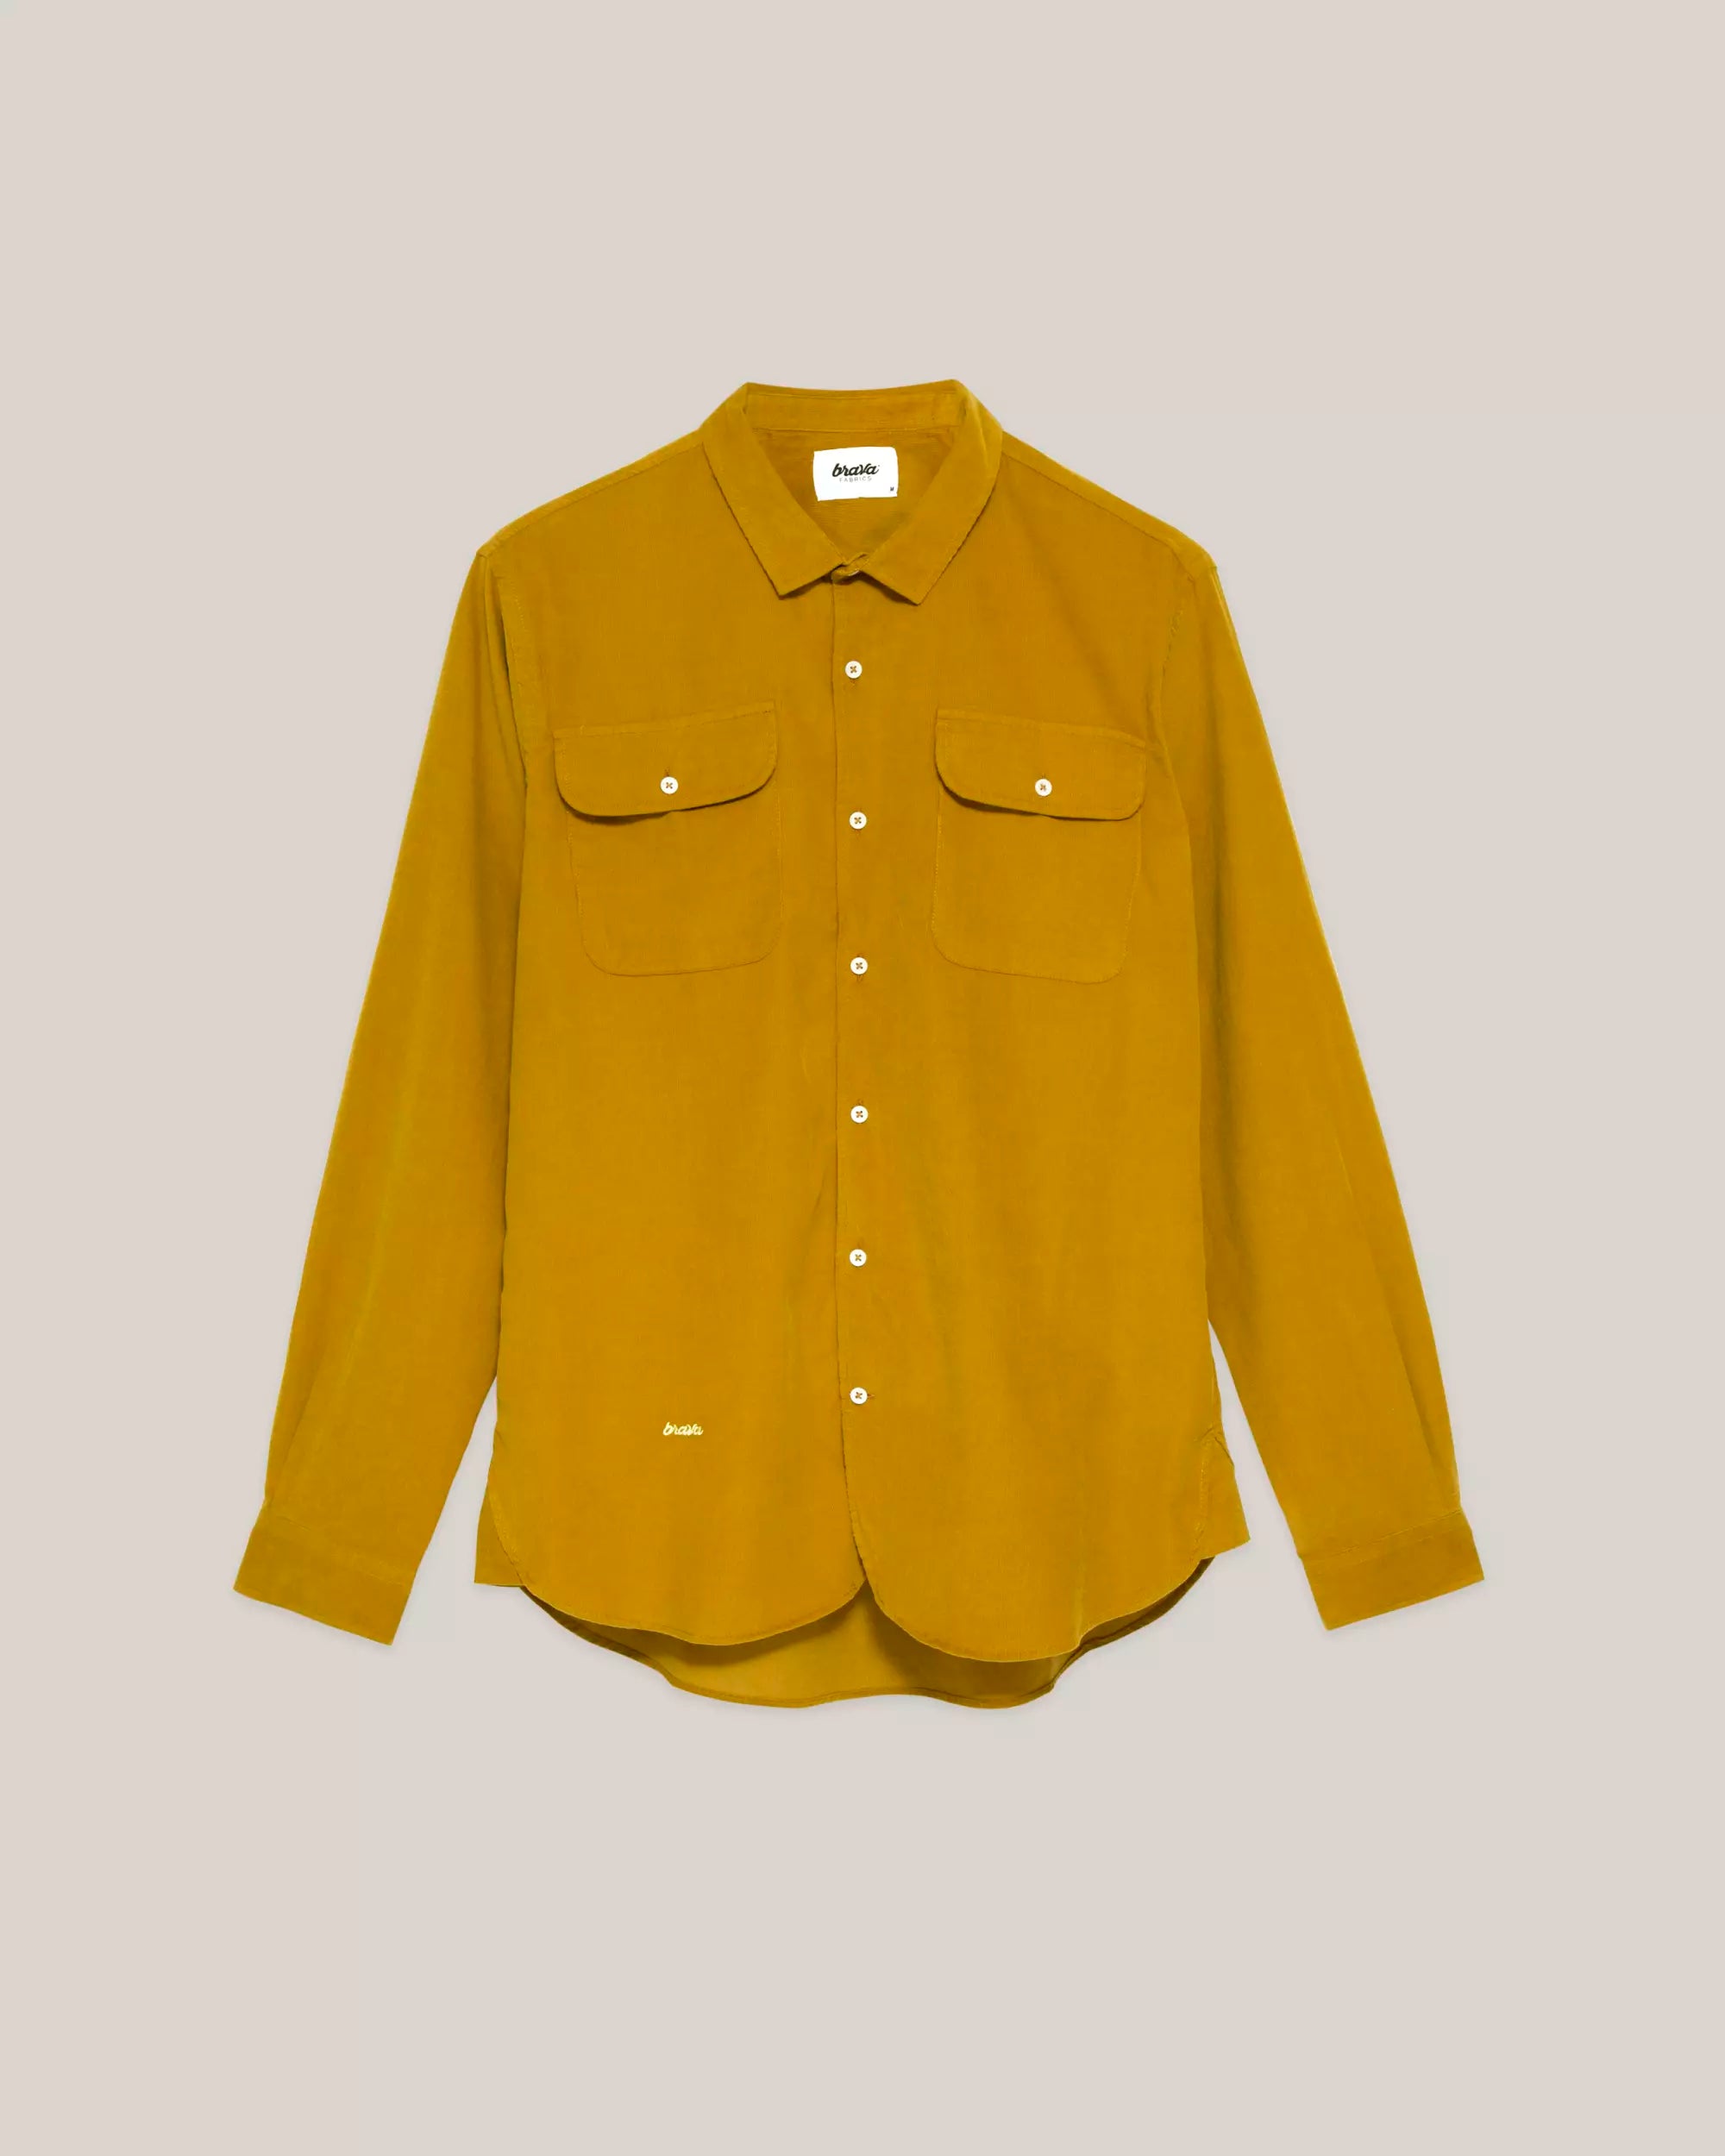 Yellow Lirium shirt made from organic cotton from Brava Fabrics